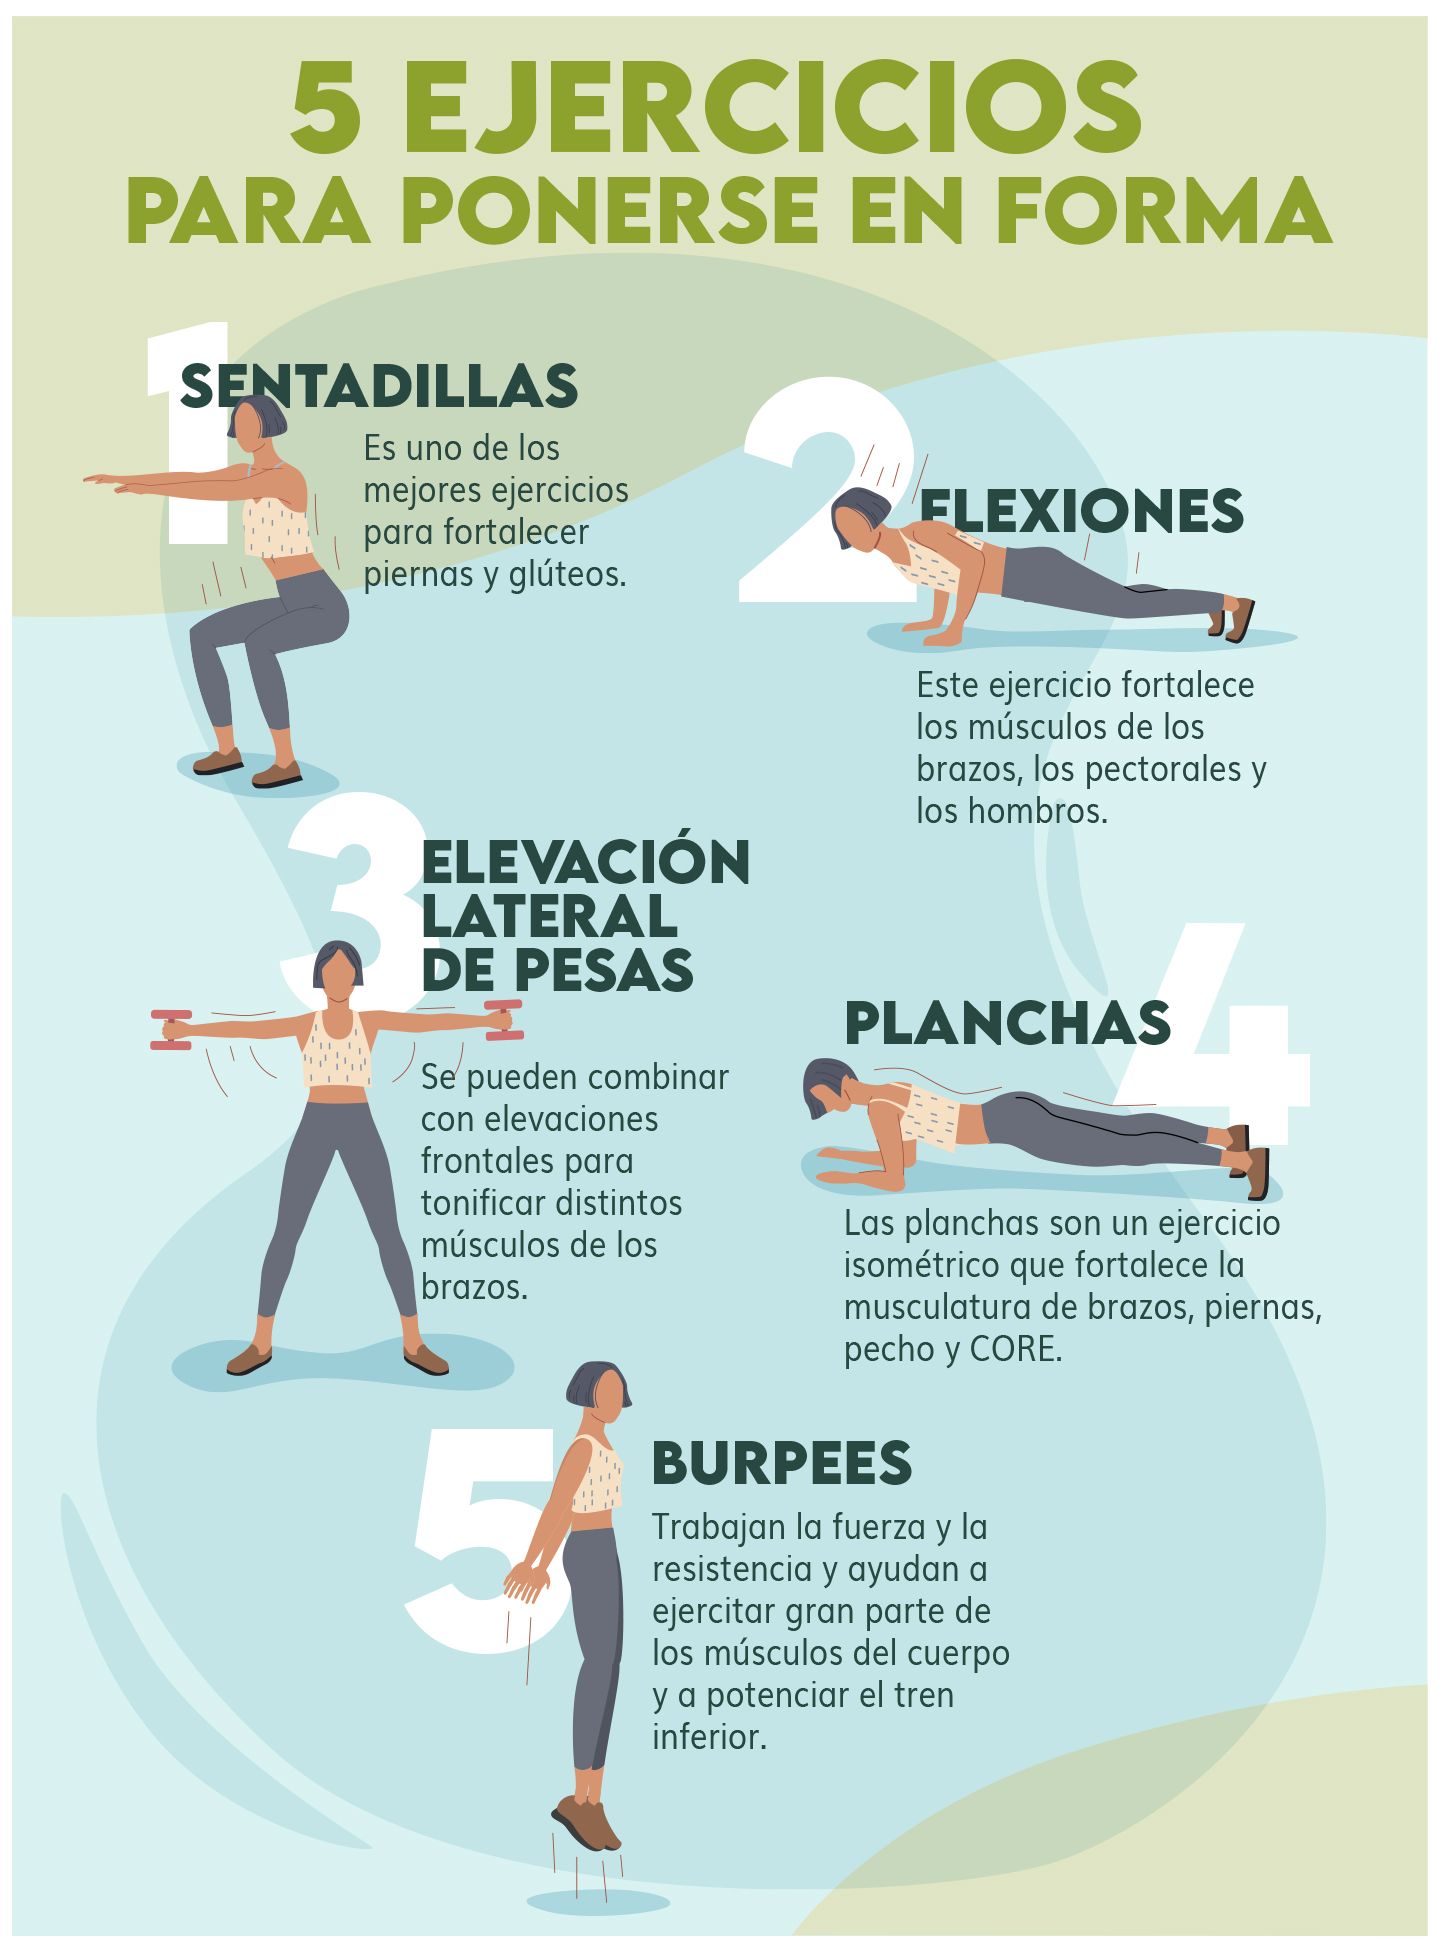 10 ejercicios físicos que podrás realizar en casa para ponerte en